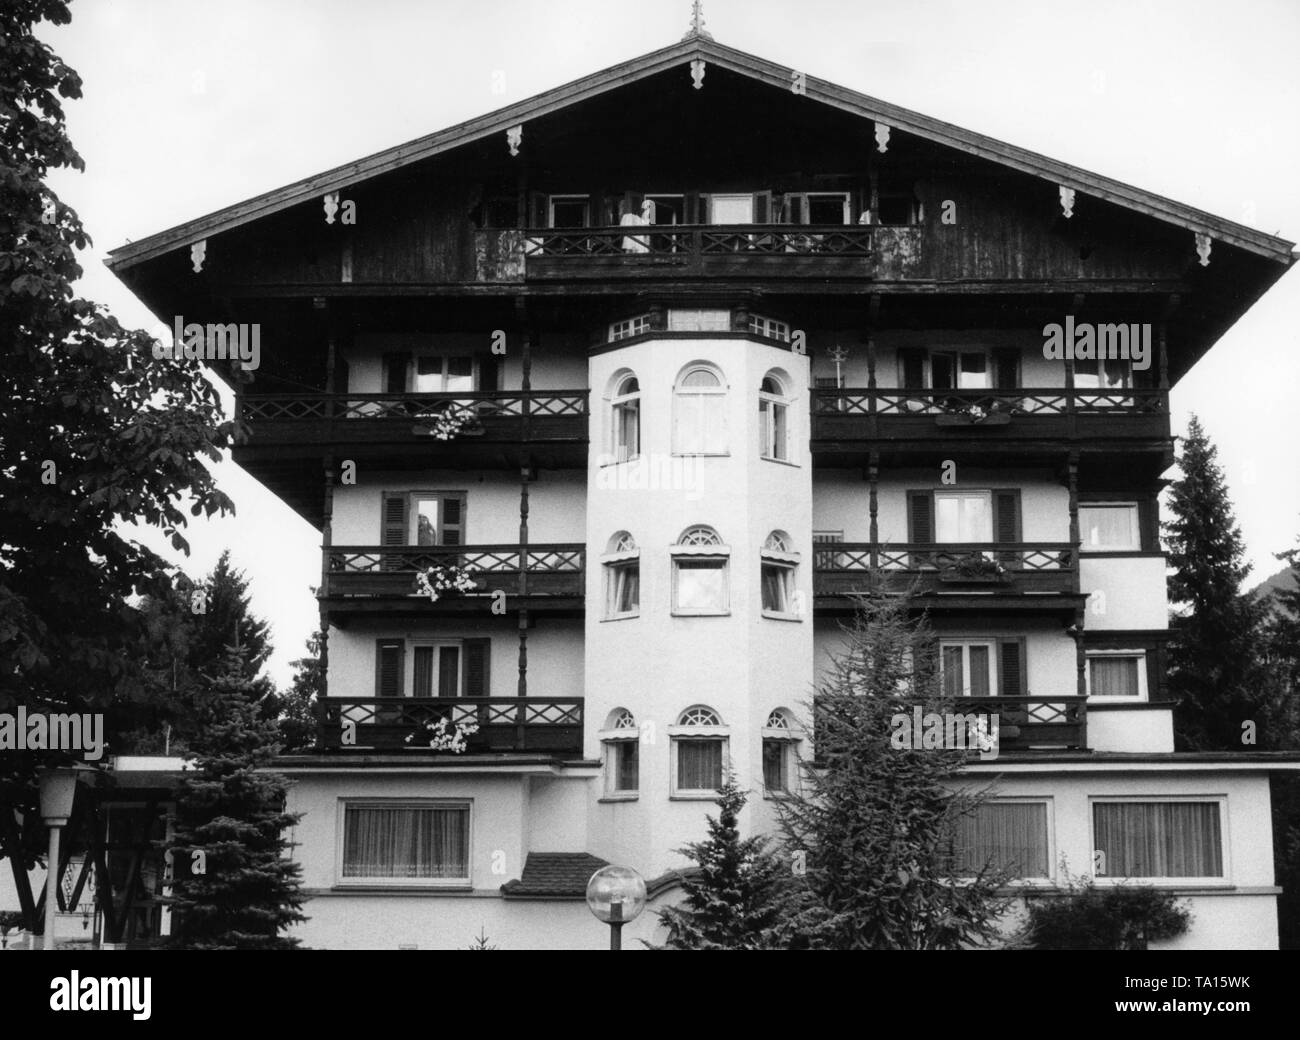 Pensione Hanselbauer in Bad Wiessee sul lago Tegernsee, dove Ernst Roehm e altri leader SA furono uccisi il 30 giugno 1934. Foto non datata, probabilmente a partire dagli anni cinquanta. Foto Stock